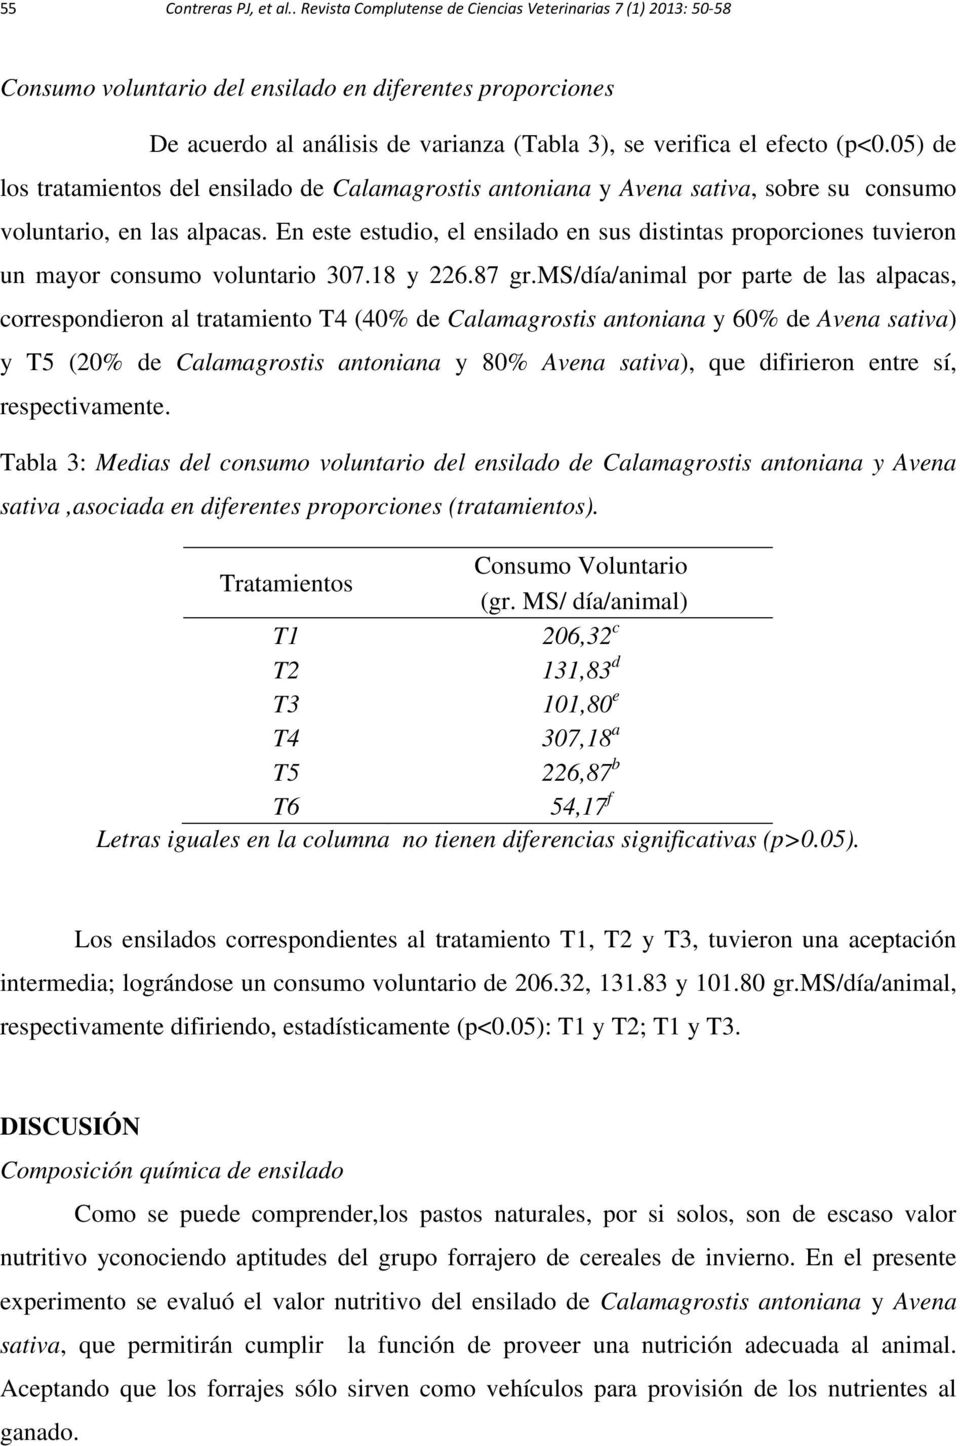 05) de los tratamientos del ensilado de Calamagrostis antoniana y Avena sativa, sobre su consumo voluntario, en las alpacas.